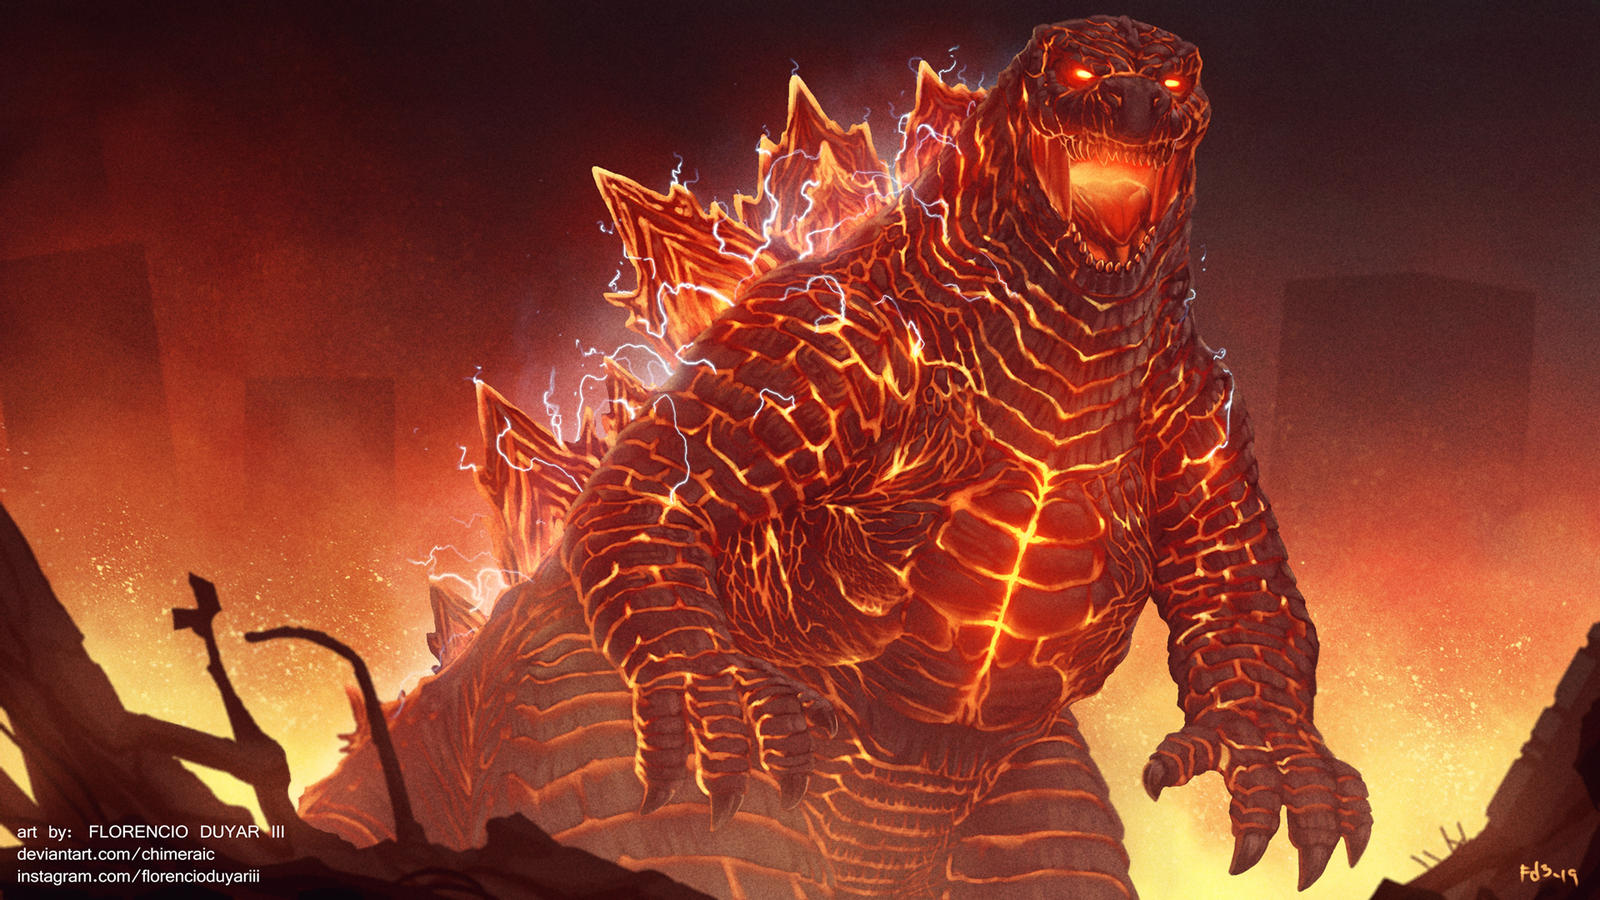 LA VERSIÓN MÁS BRUTAL DE GODZILLA  Godzilla Earth: Habilidades y Poderes 